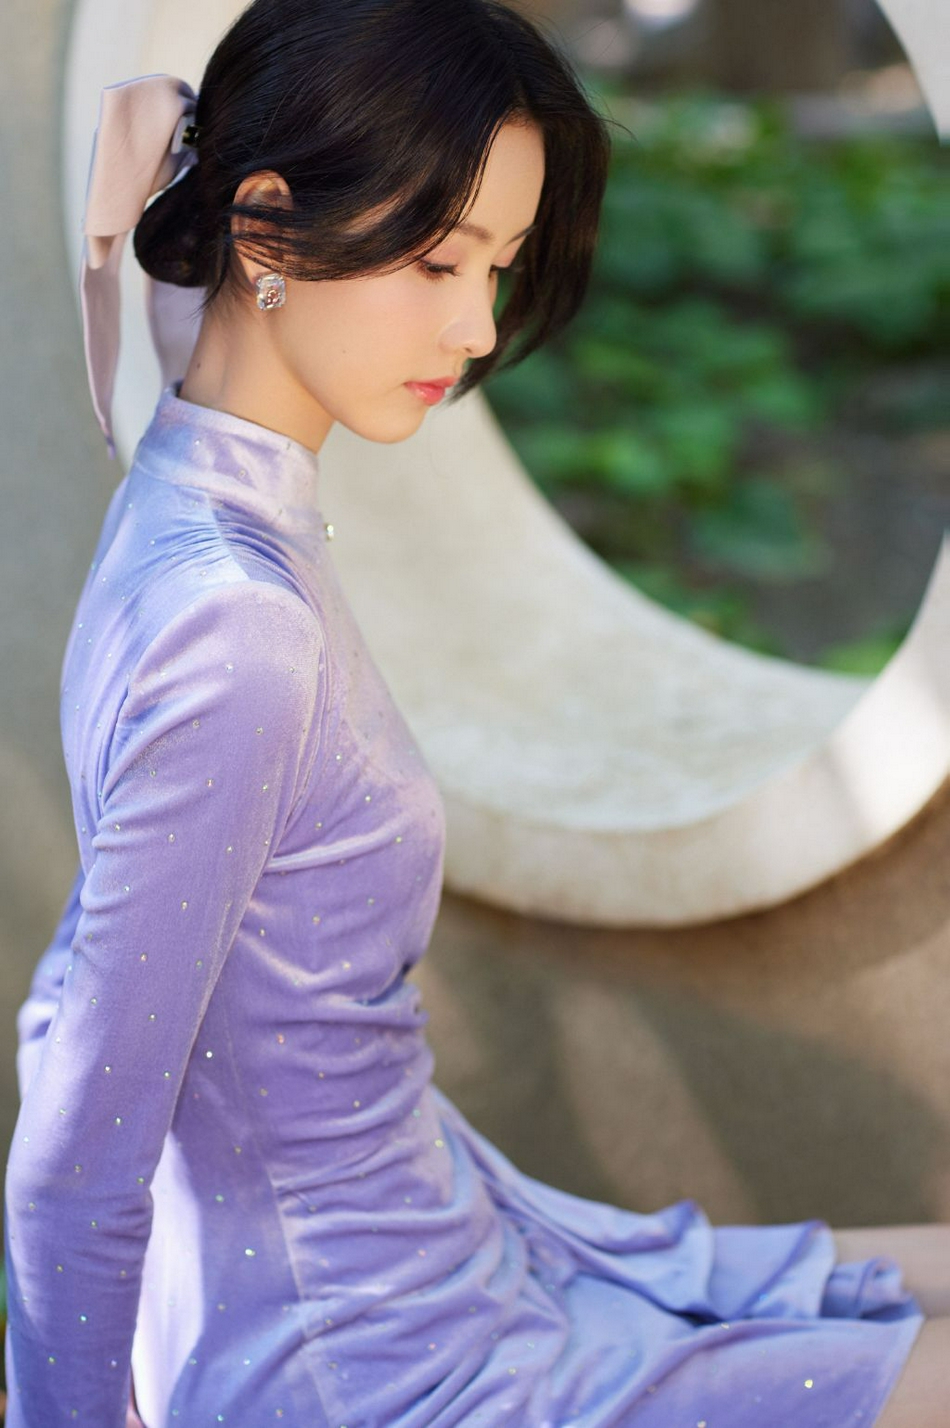 陈都灵紫色丝绒短裙大秀身材写真